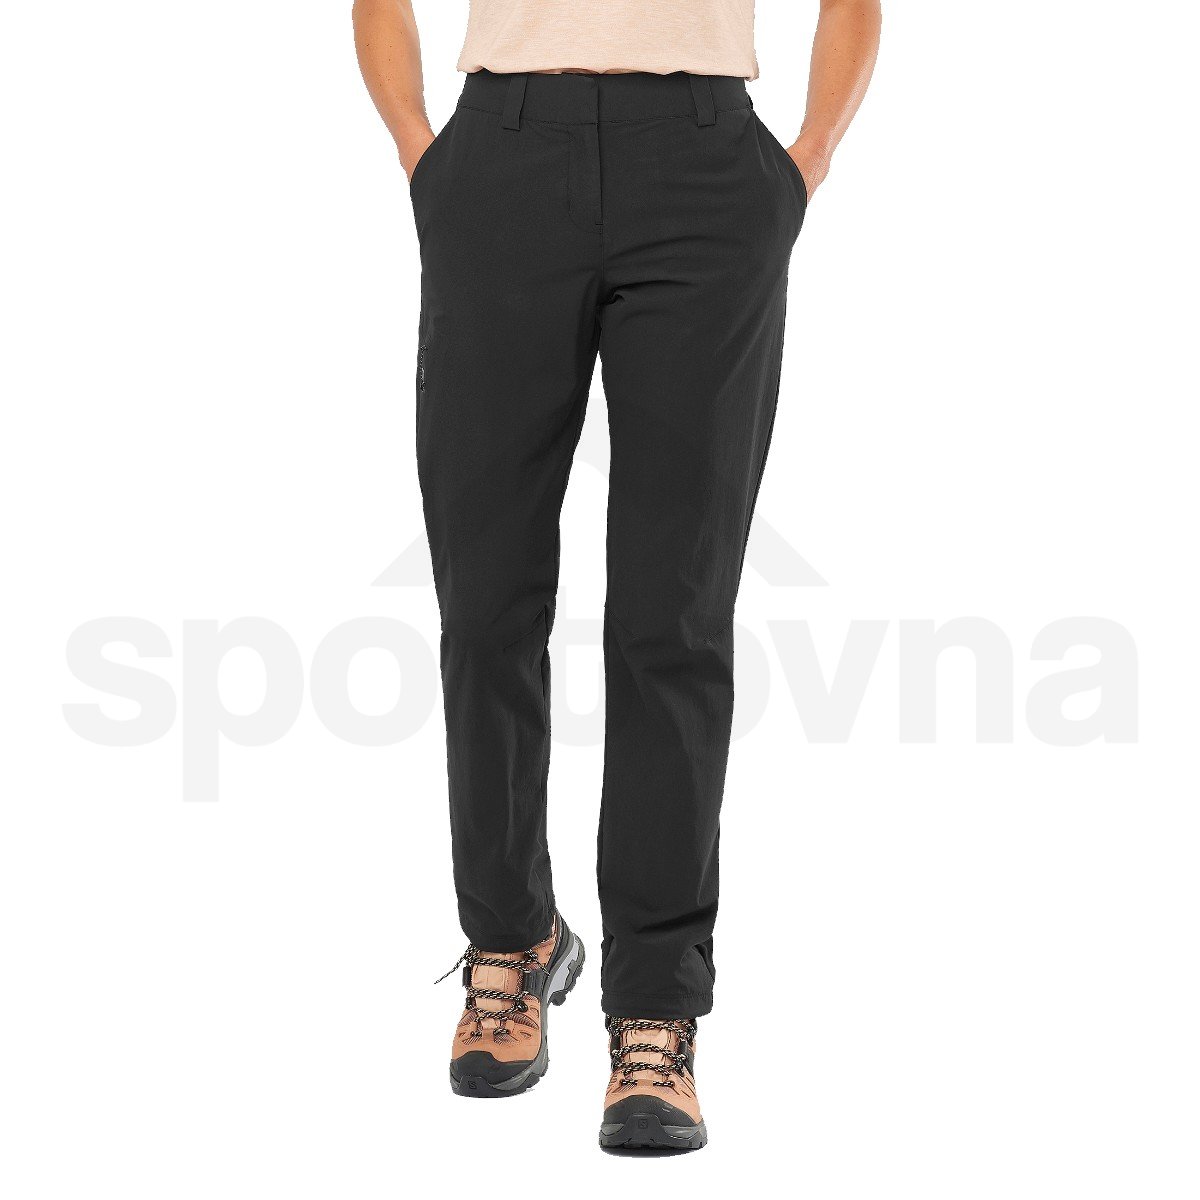 Kalhoty Salomon WAYFARER PANTS W - černá (standardní délka)